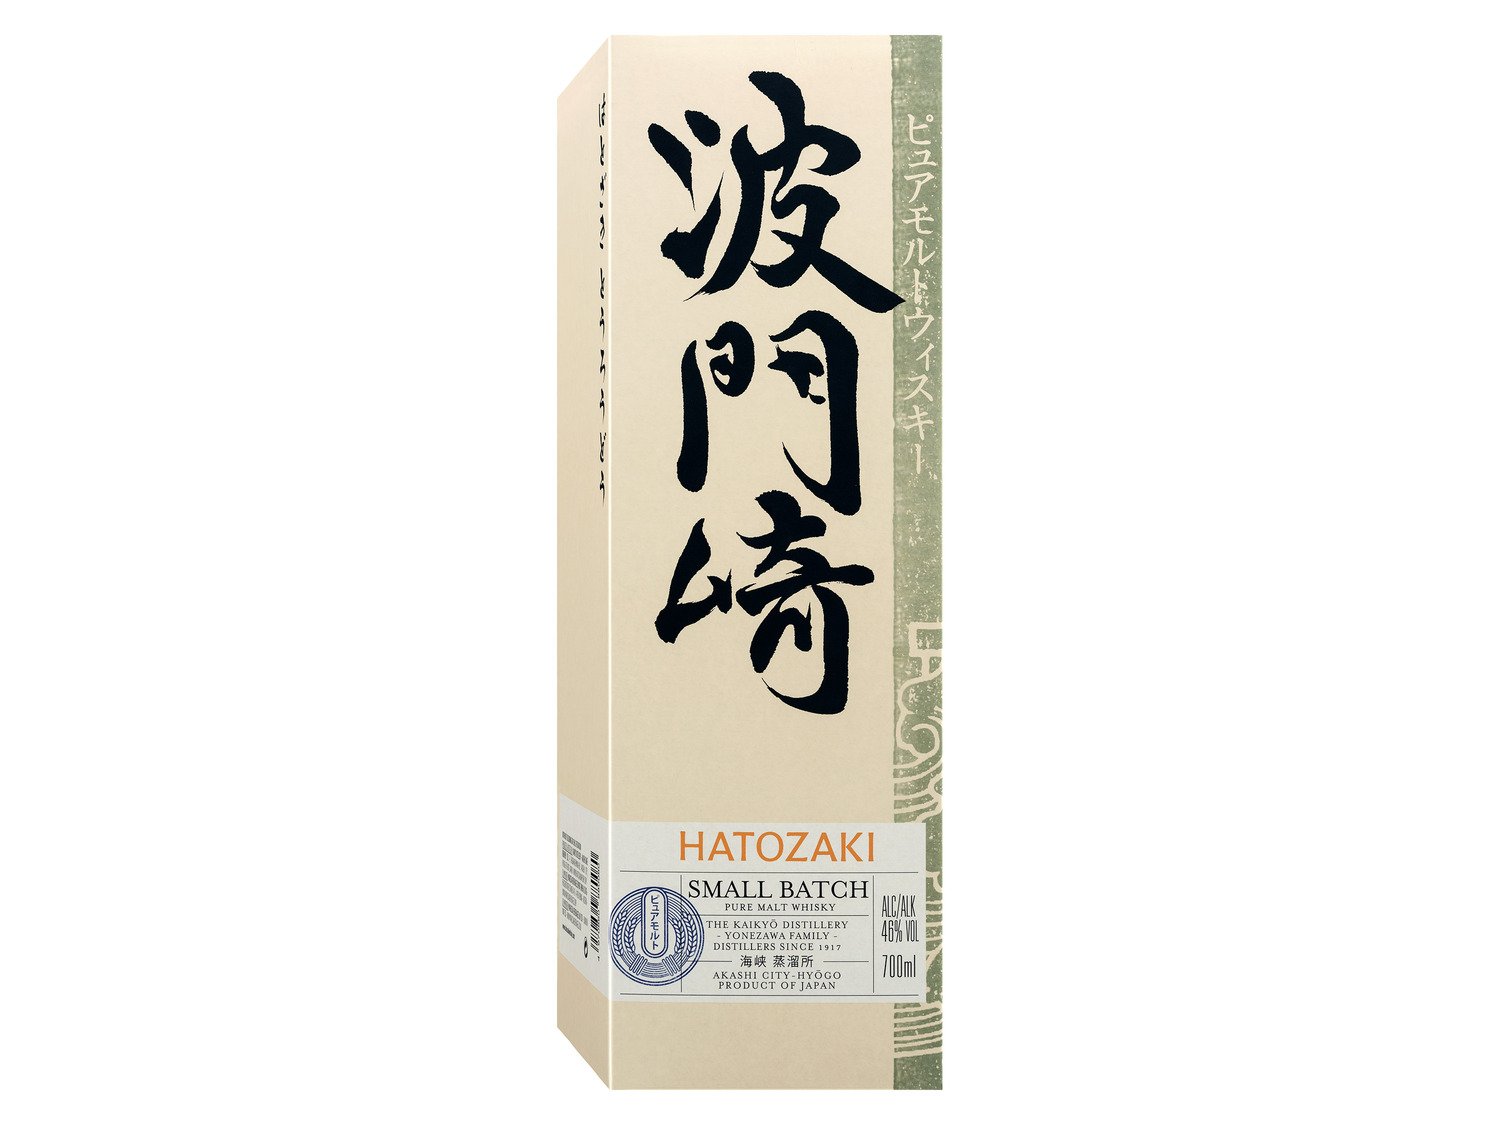 Whisky Geschenk… Hatozaki Kaikyō Malt mit Japanese Pure